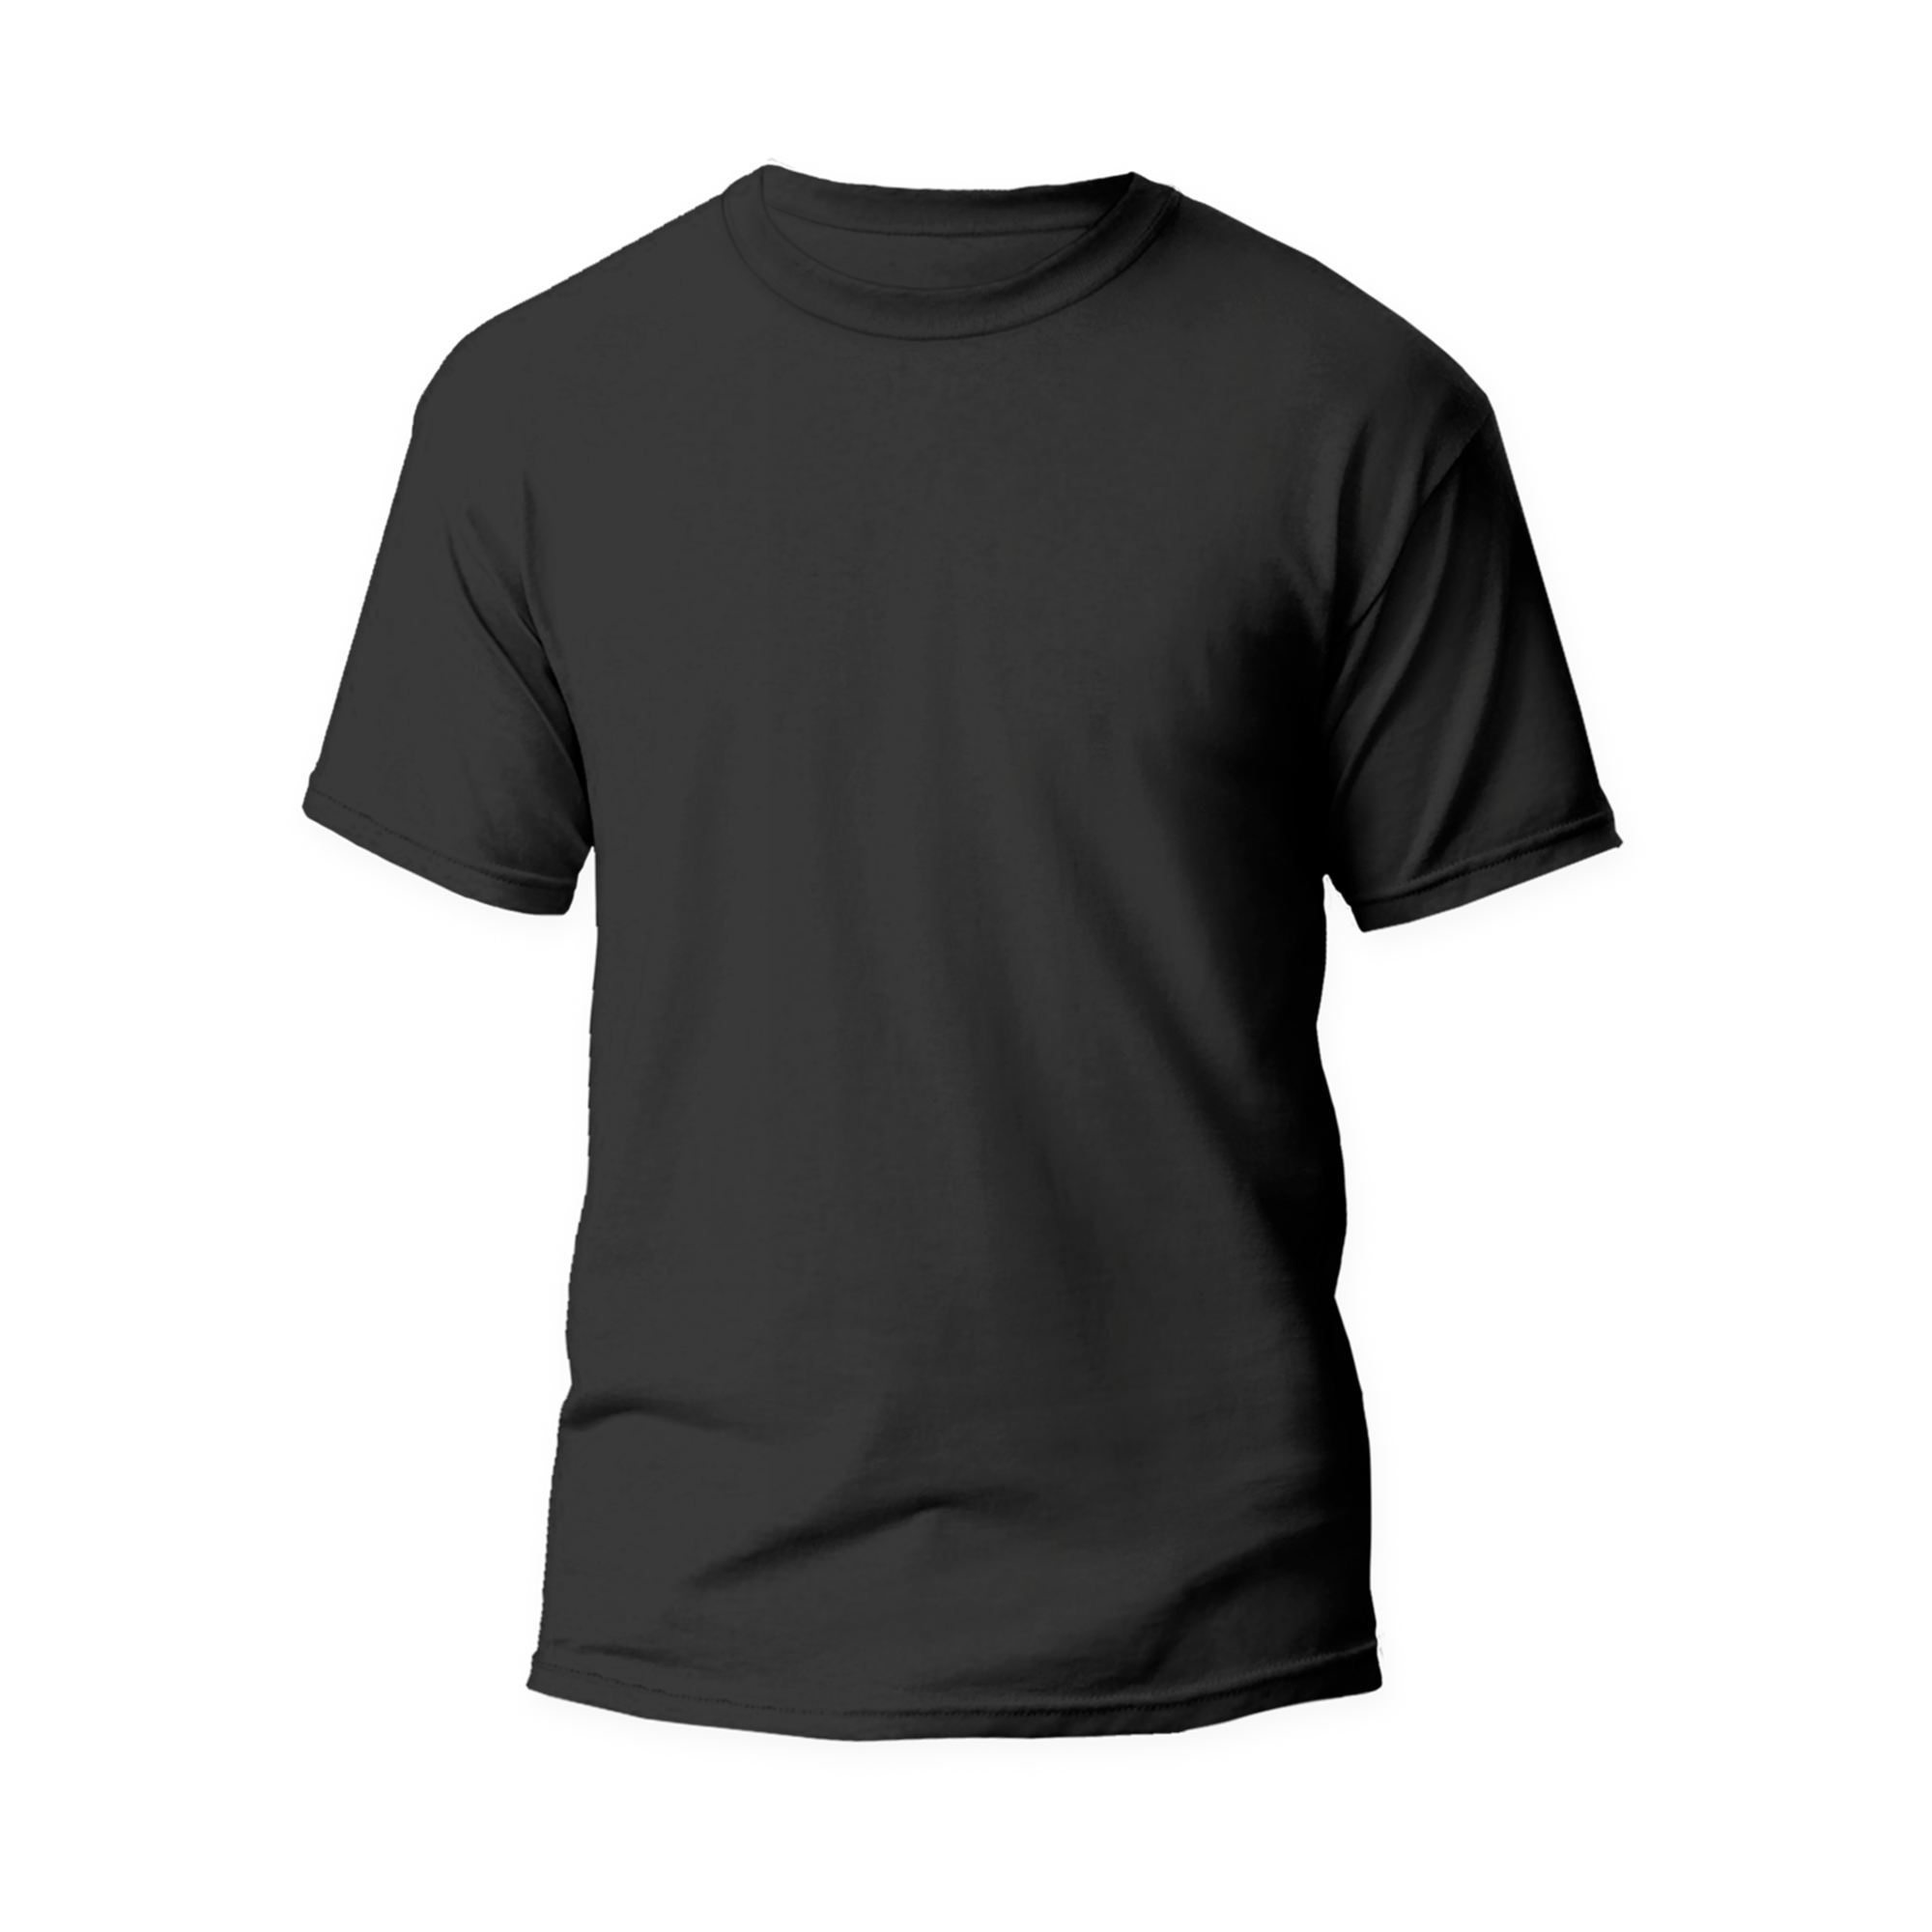 HercShirt 3.0 - The World's Cleanest Short Sleeve Shirt